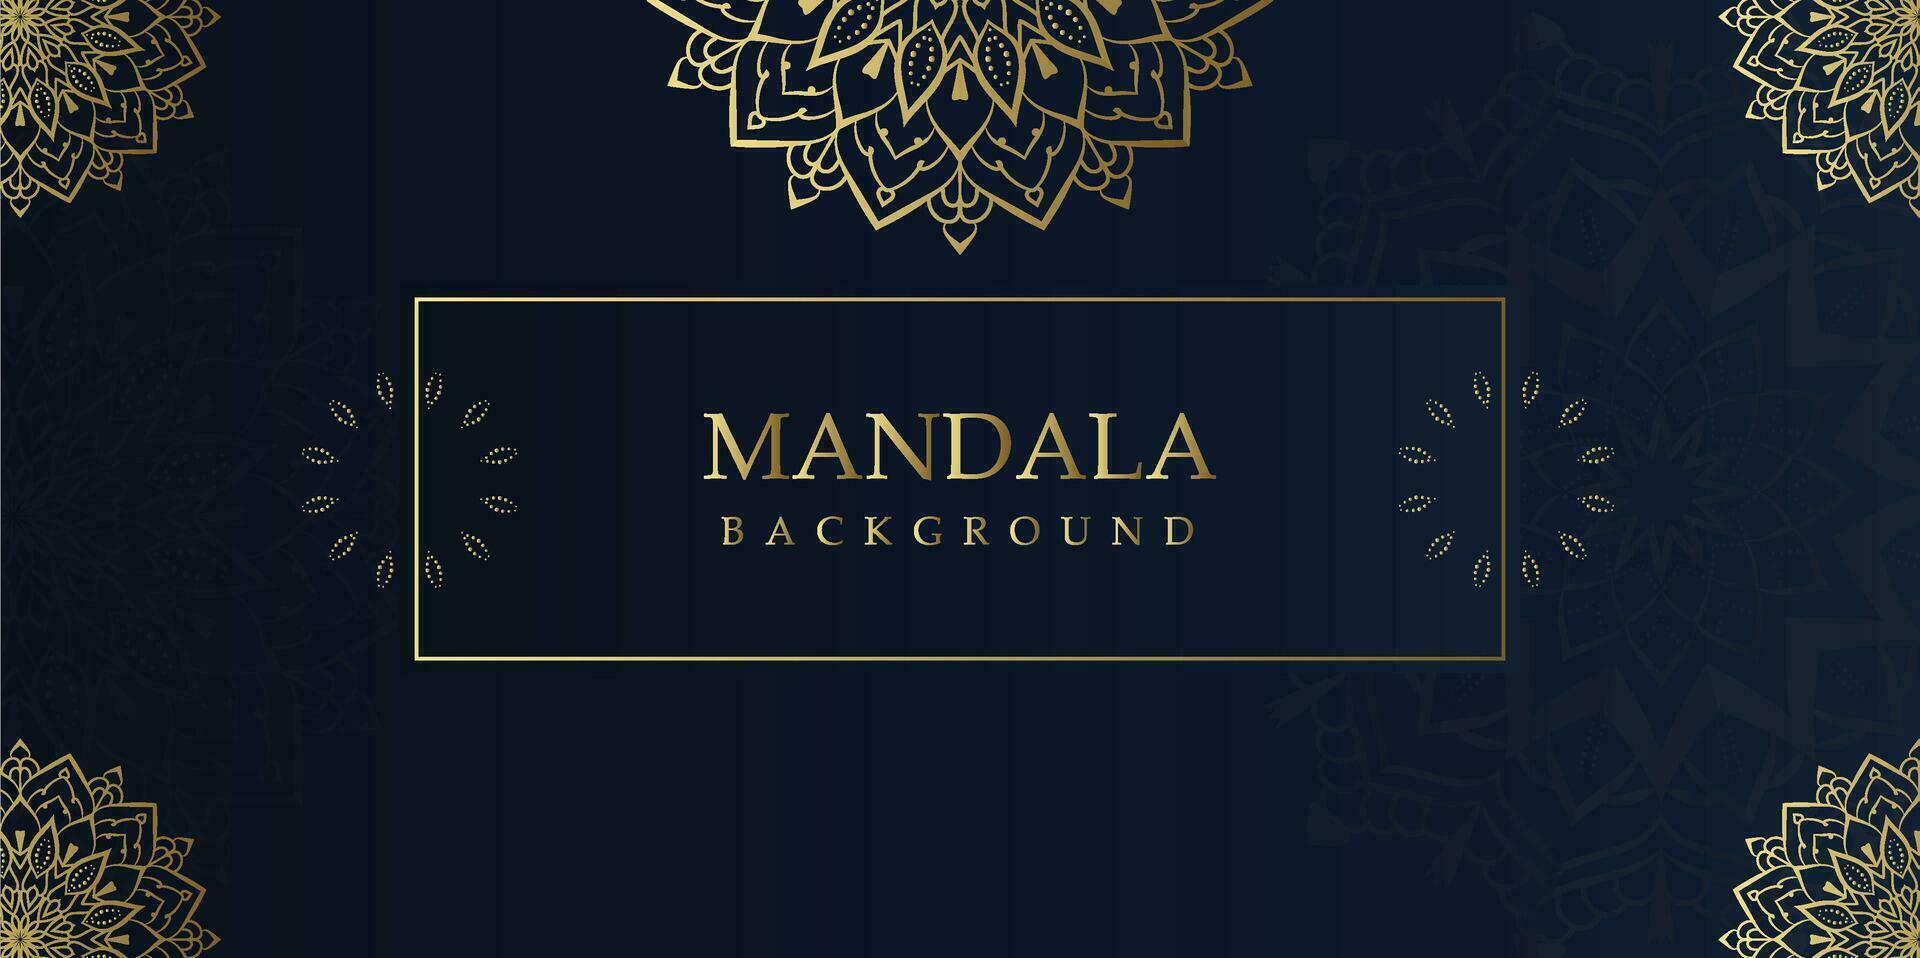 Luxury Mandala Background with Golden Arabesque Pattern - Eastern Style Decorative Mandala vector